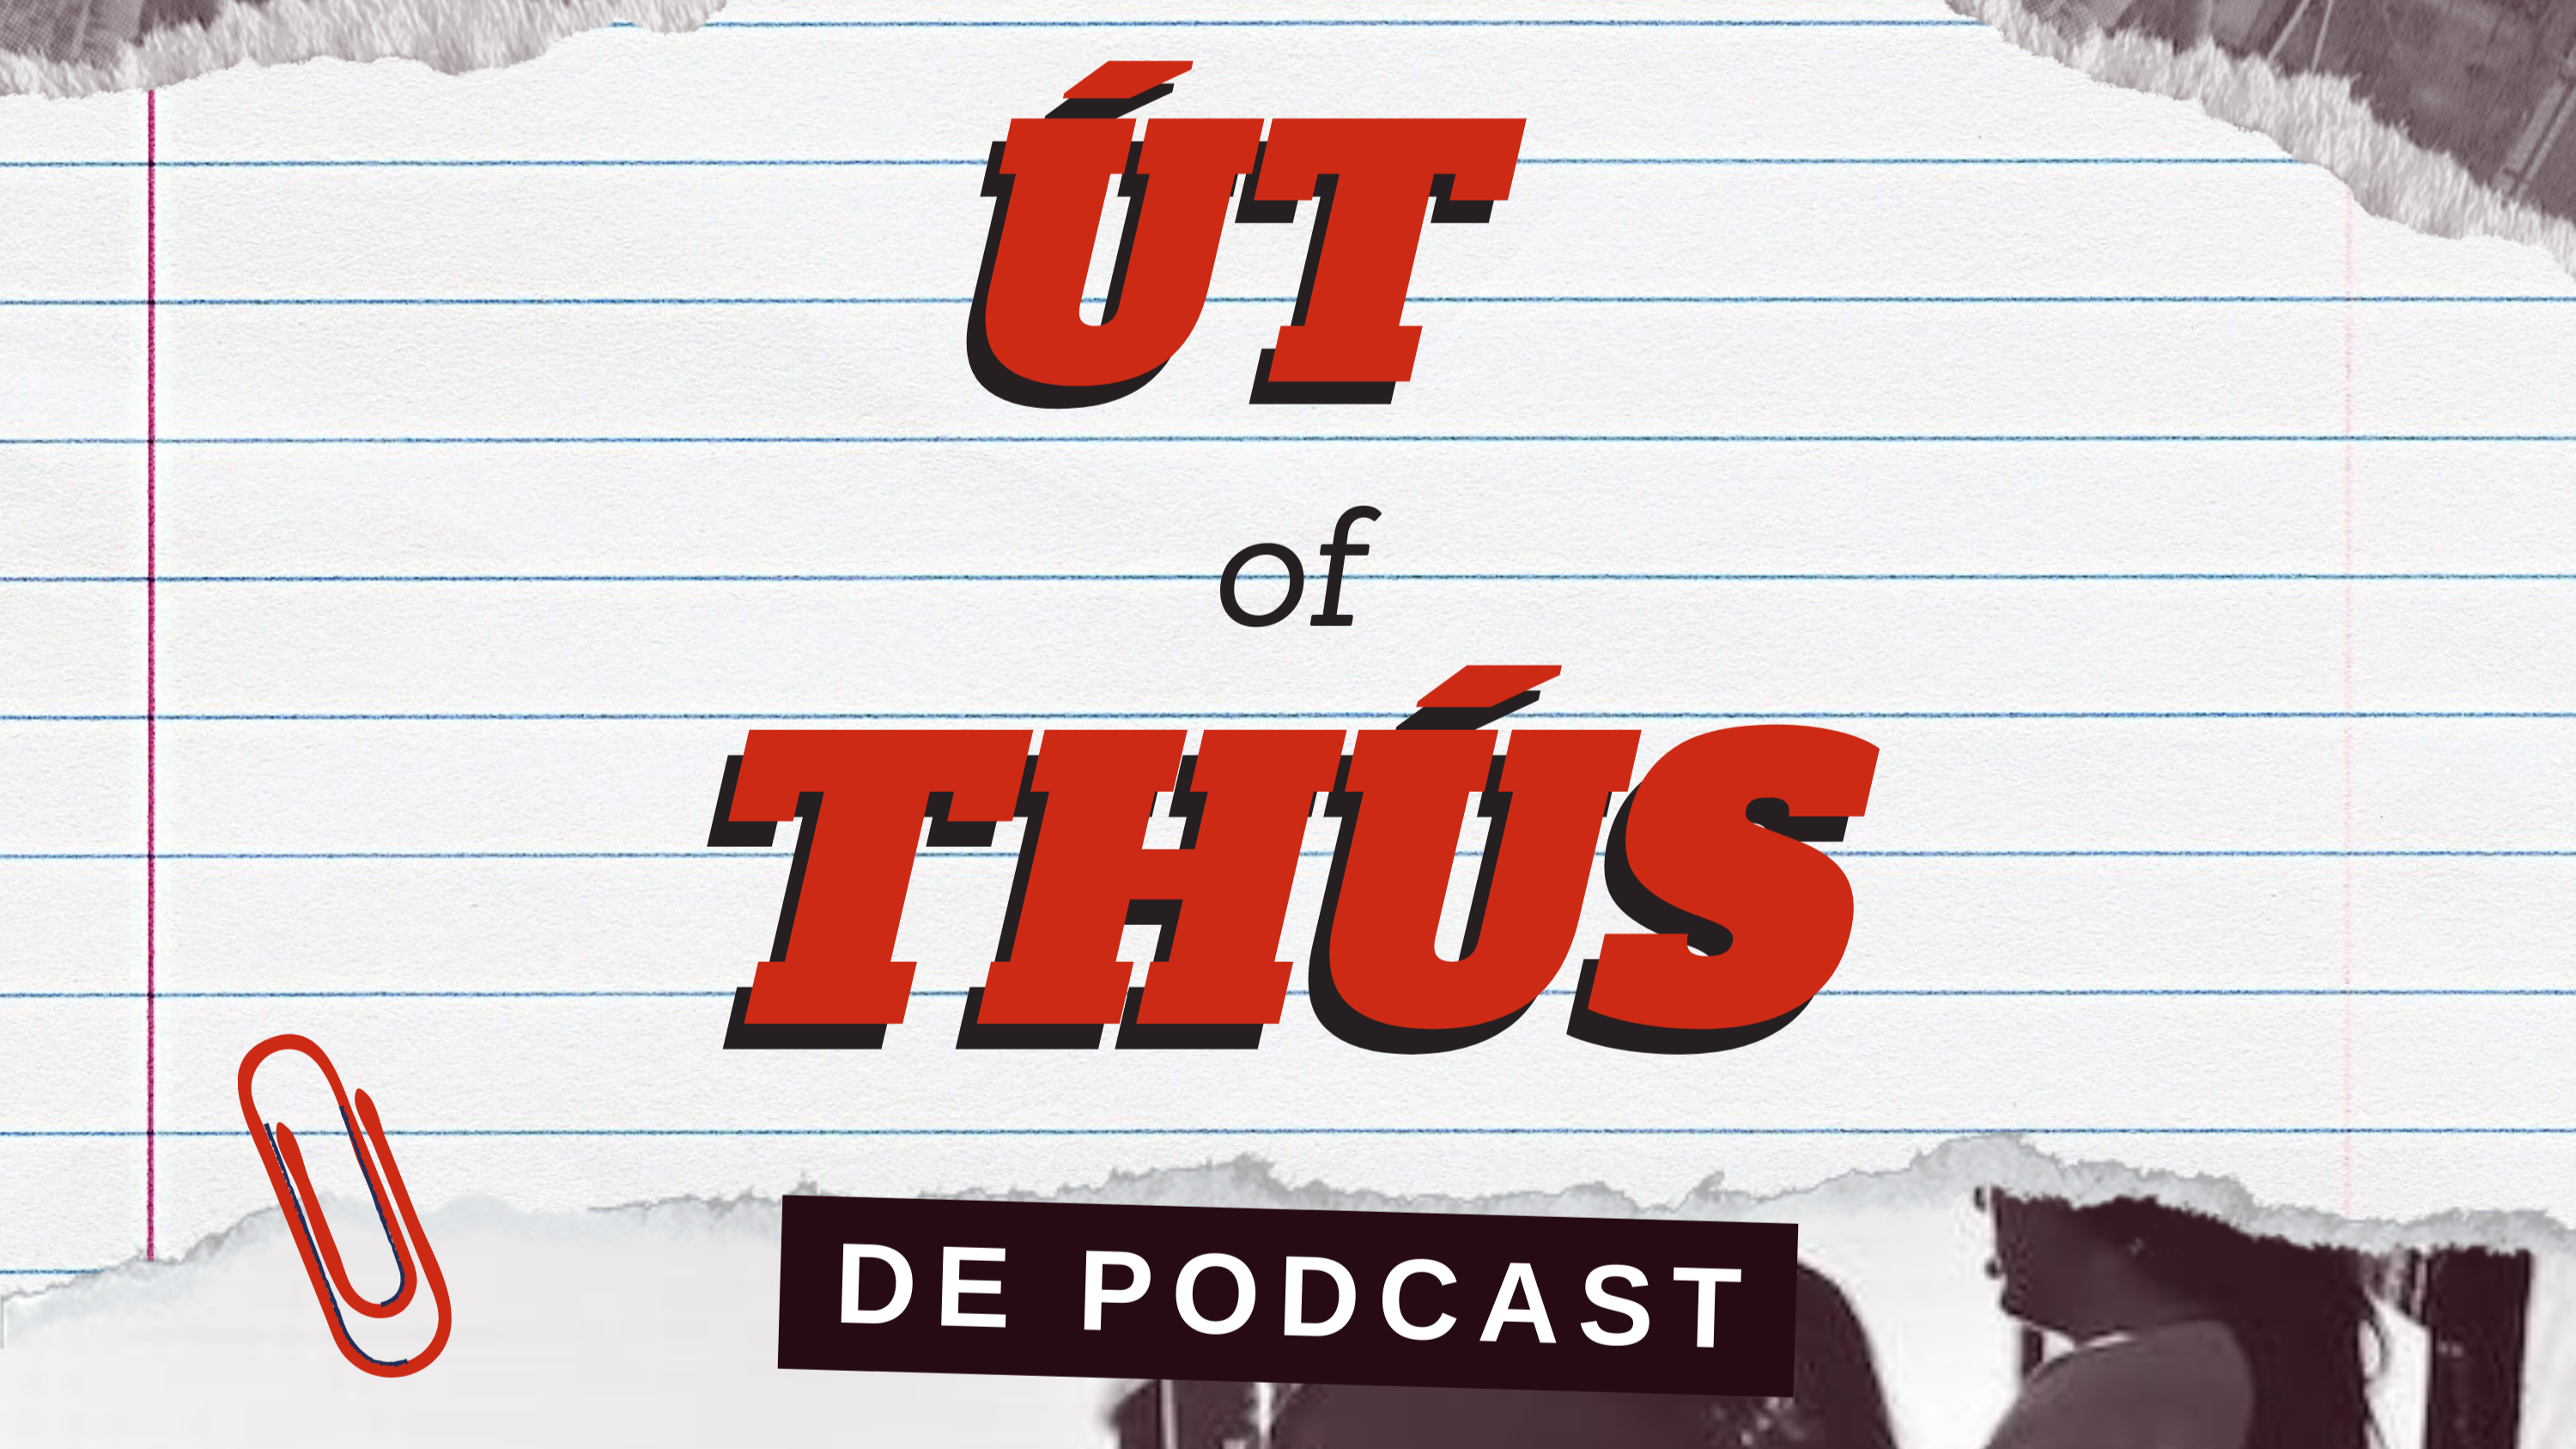 Út of Thus De Podcast: Opgroeien in een dorp en een toekomst bouwen in de stad